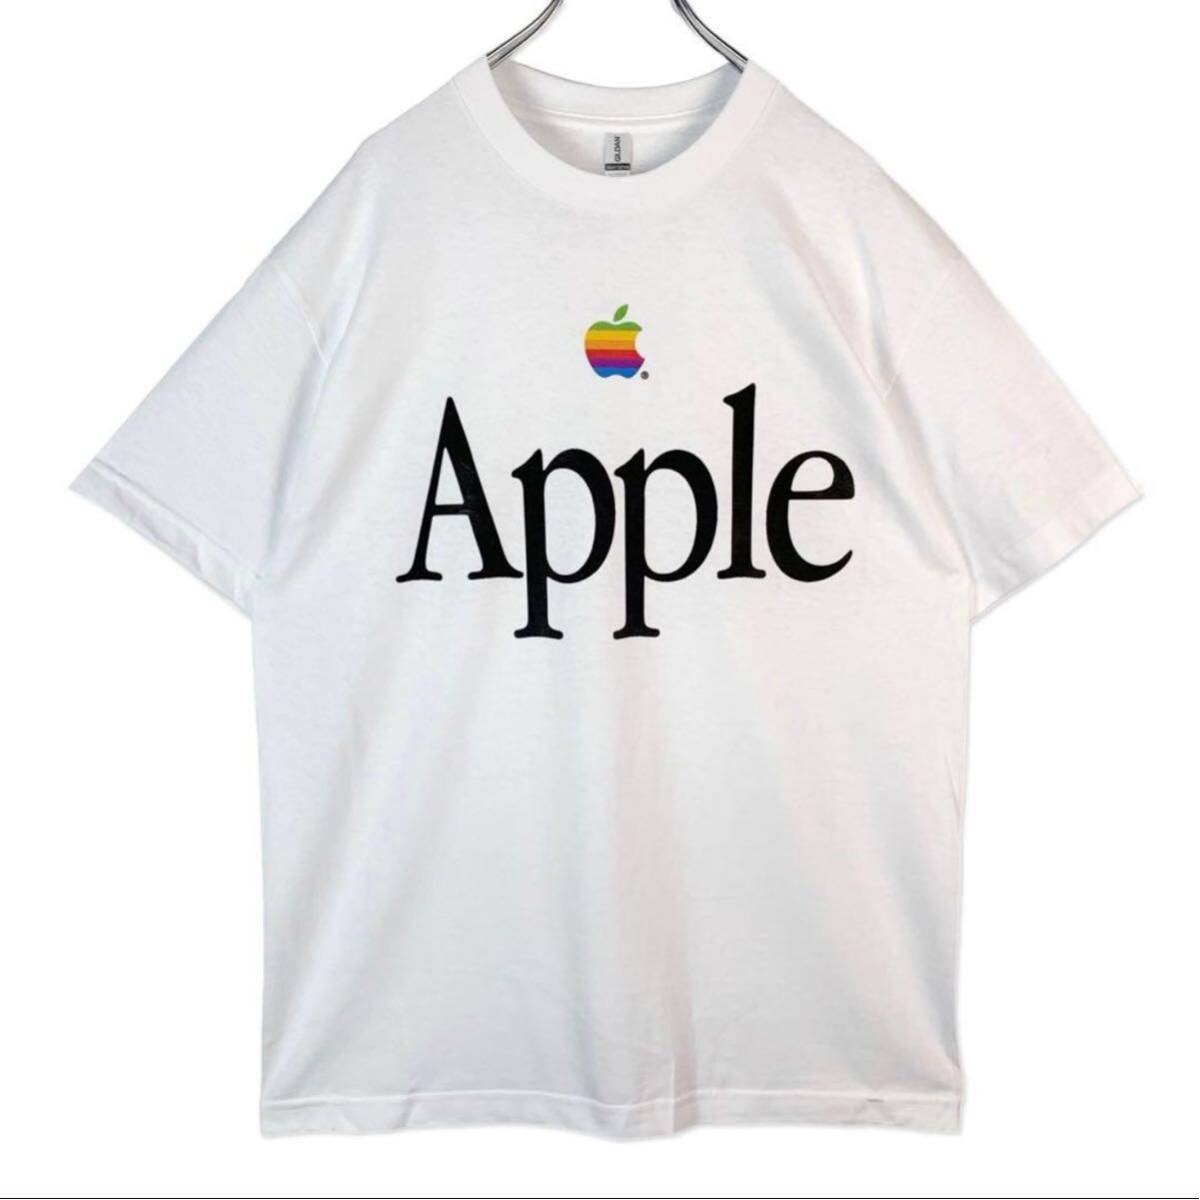 アップル Mac セール APPLE Tシャツ 企業物 ホワイト 白 大判 デカロゴ 製 リンゴ 90s USA アメリカ 00s y2k 野村訓市 Marlboro 